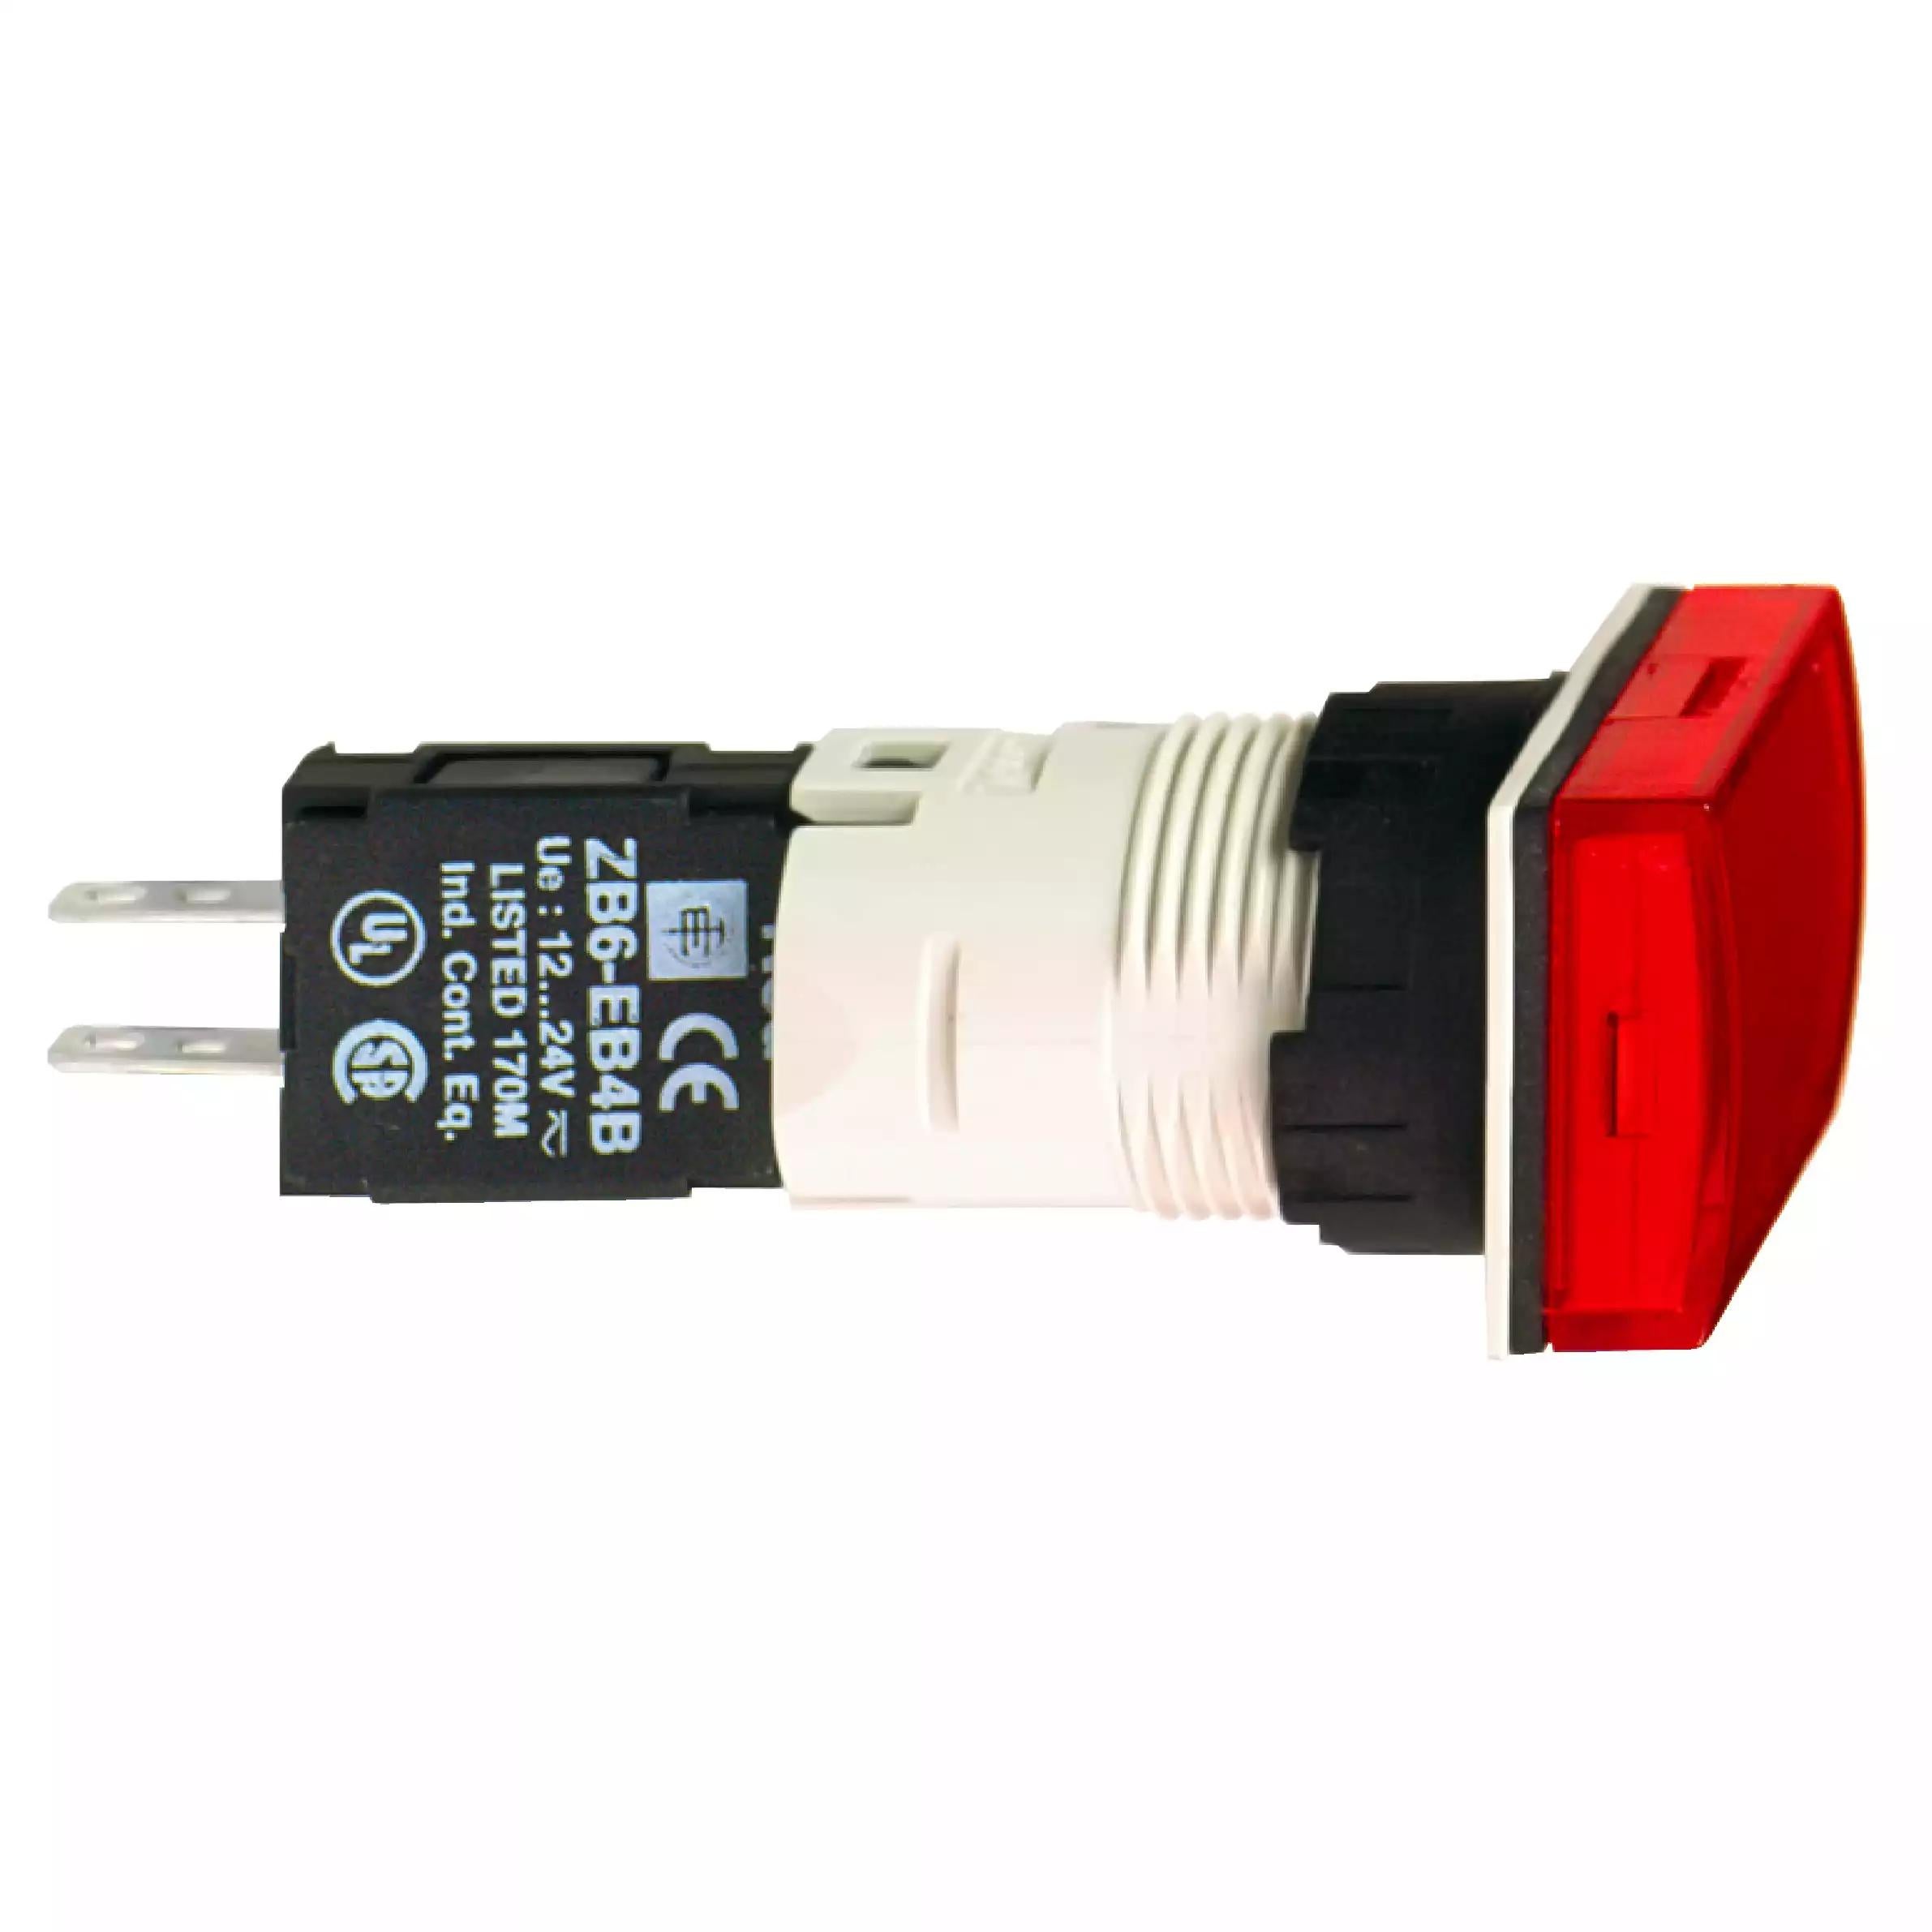 Complete pilot light, Harmony XB6, rectangular red, plastic, 16mm, integral LED, 12...24V